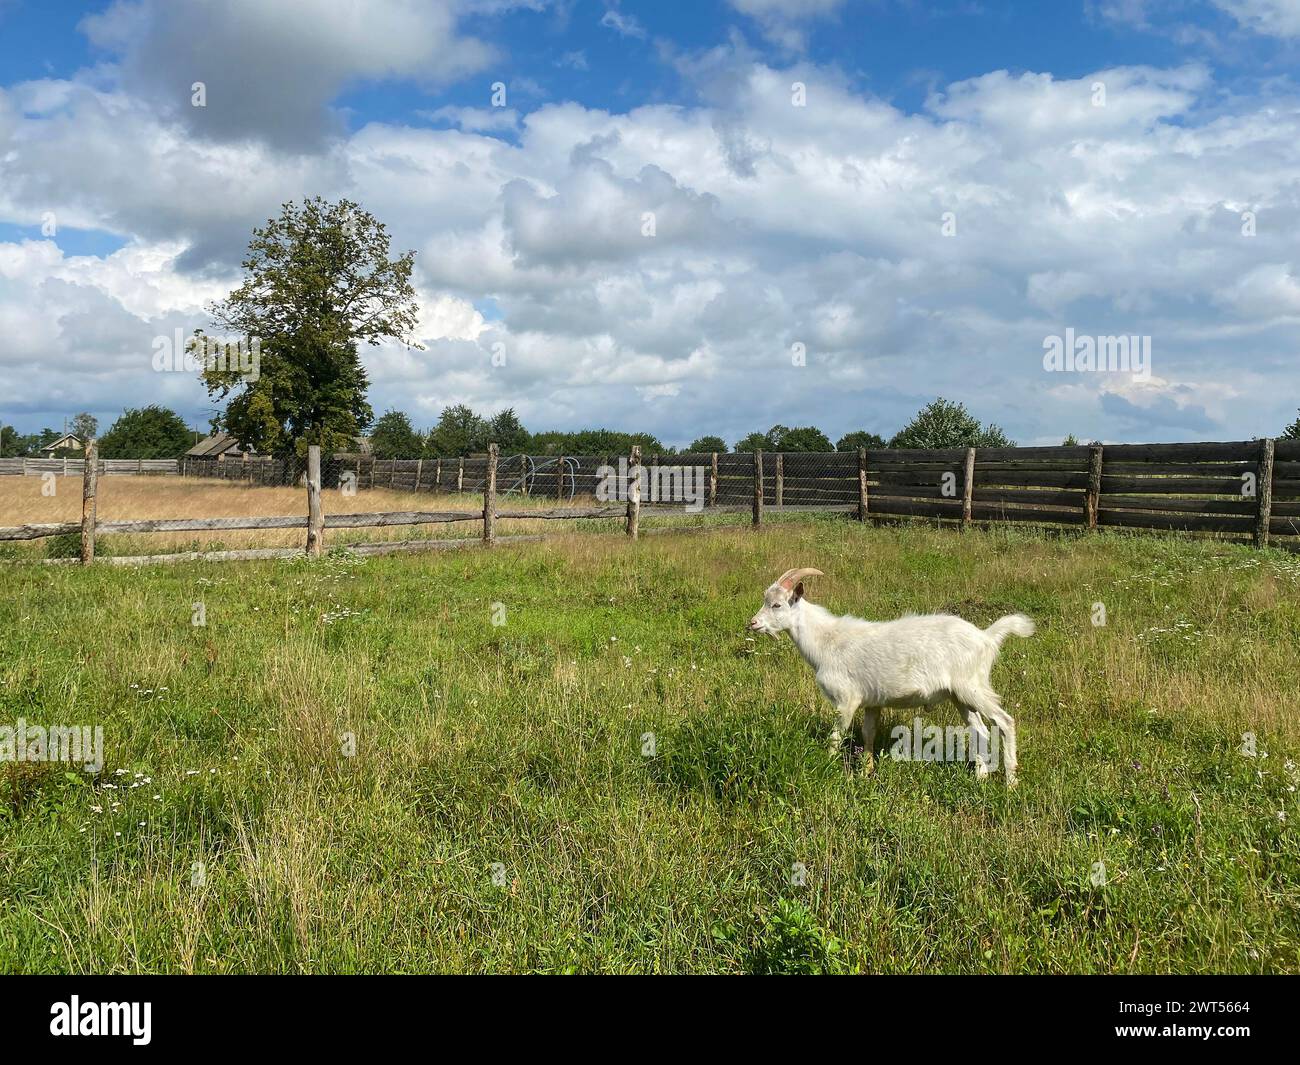 Chèvre blanche dans une ferme derrière la clôture, foyer sélectif. Concept d'élevage et d'élevage de chèvres Banque D'Images